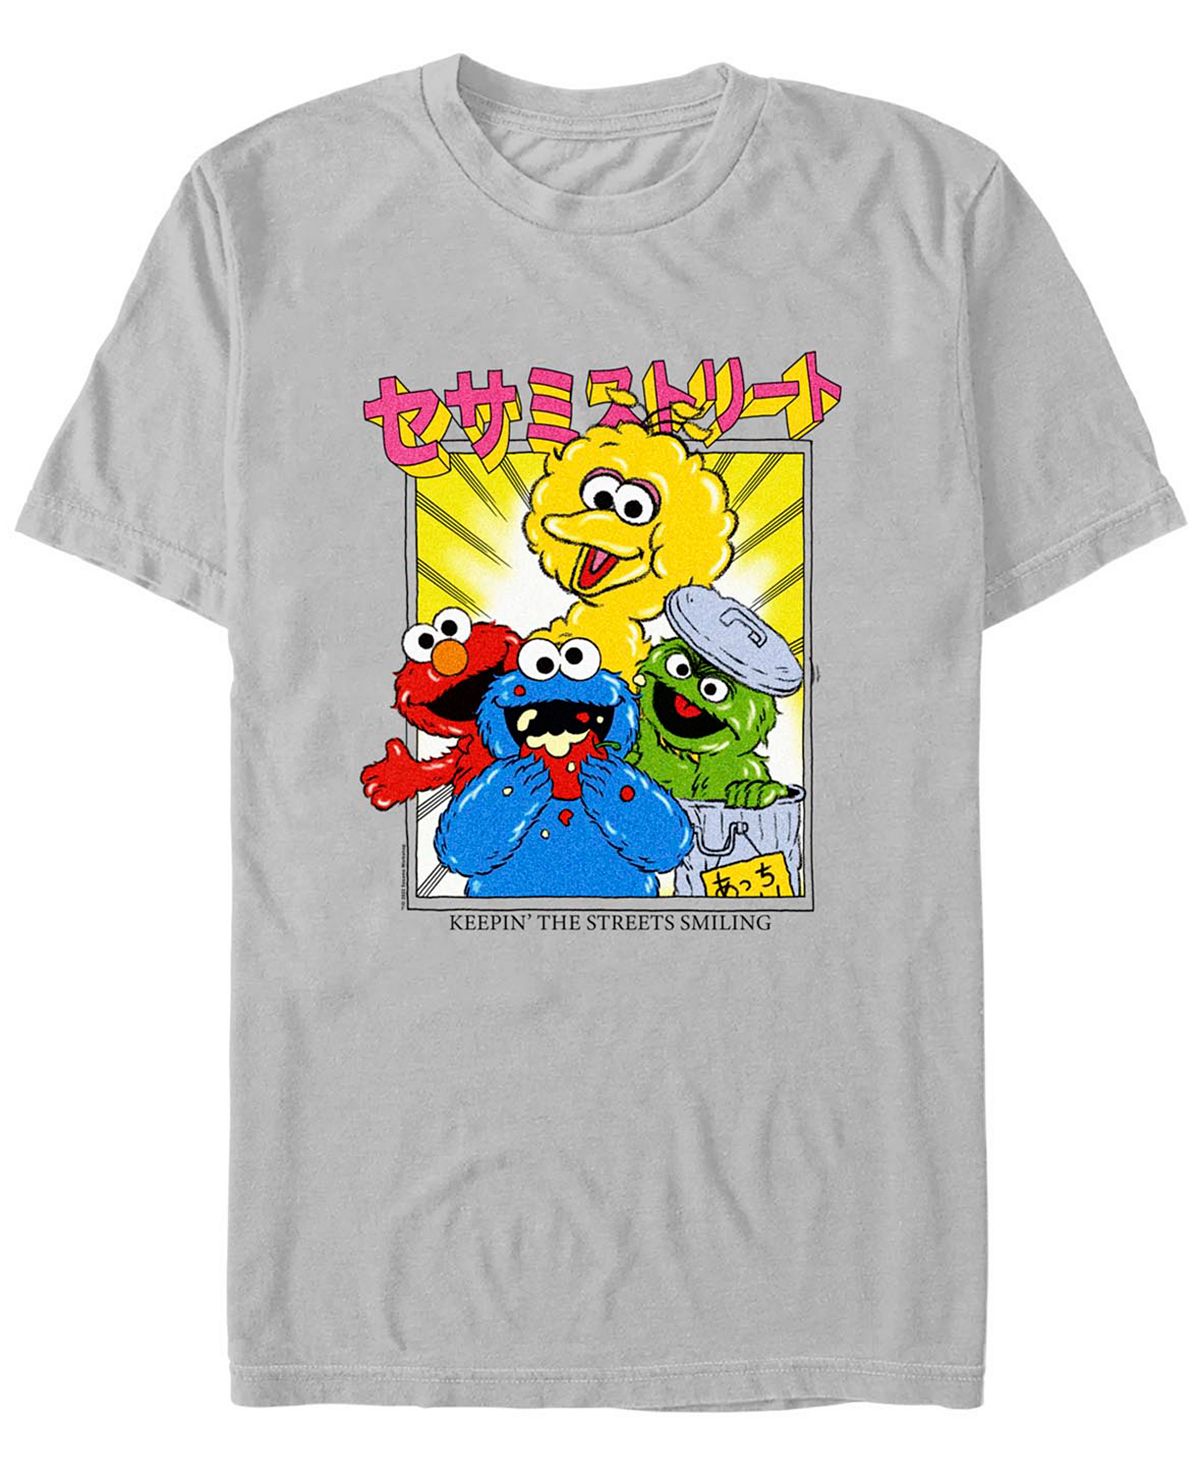 Мужская футболка с короткими рукавами «улица сезам» и «улицы аниме» Fifth Sun, мульти сезам откройся